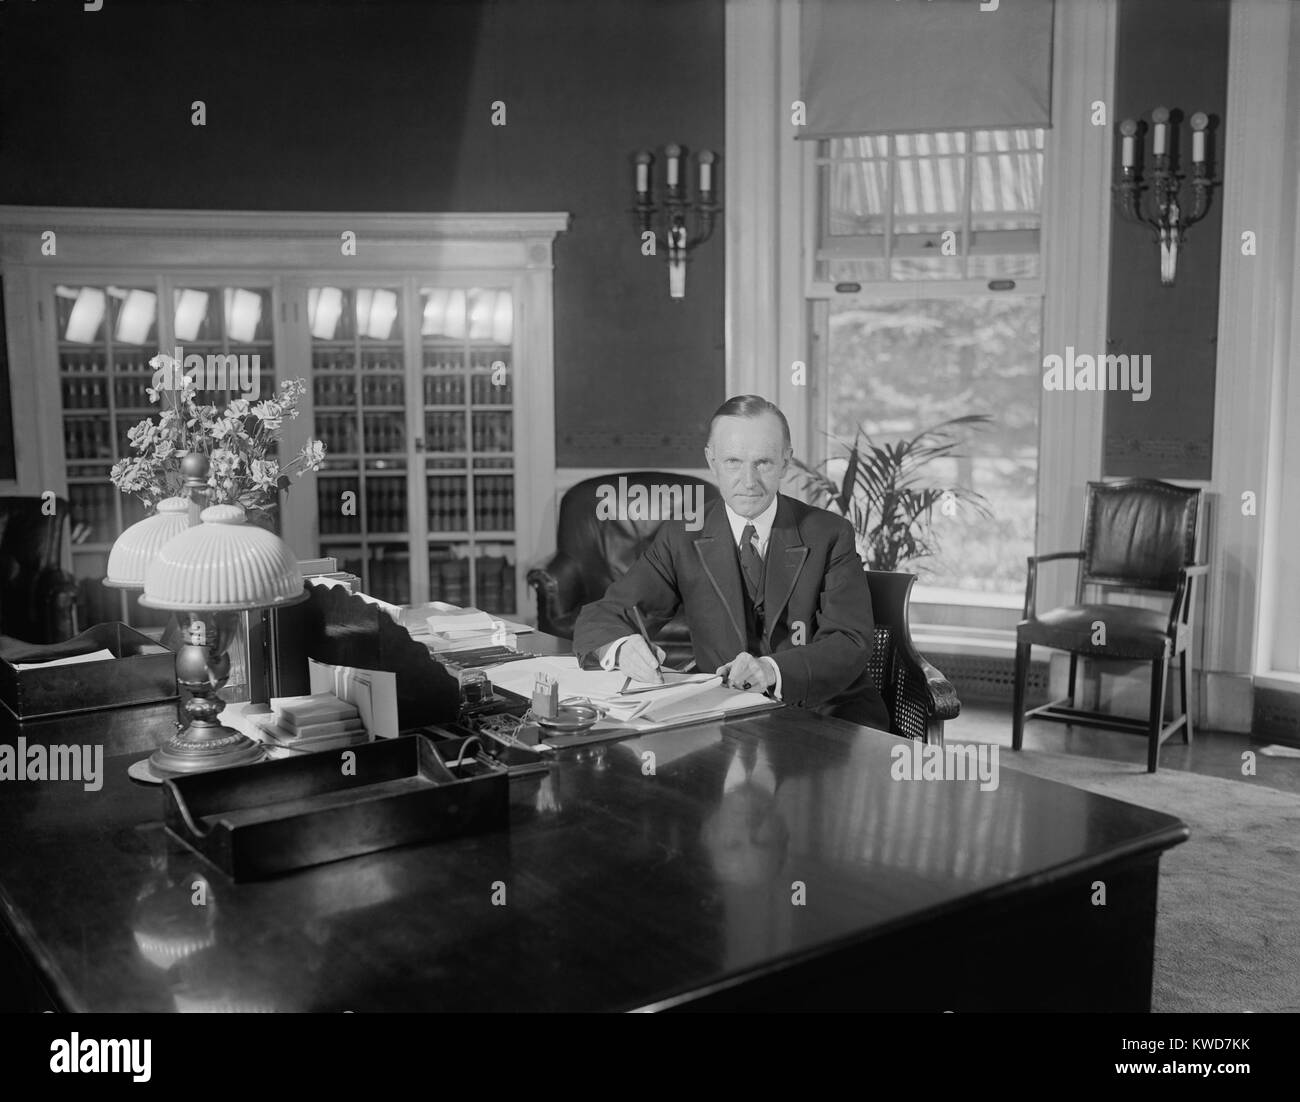 Präsident Calvin Coolidge am selben Schreibtisch von Harding im Oval Office verwendet. Foto wurde am 12.08.14, veröffentlicht 1923, weniger als zwei Wochen nach dem Tod von Warren Harding. Florence Harding war verärgert, dass Coolidge an diesem Schreibtisch saß für Fotografen, bevor Warren Harding's Körper an das Weiße Haus zurück. (BSLOC 2015 15 97) Stockfoto